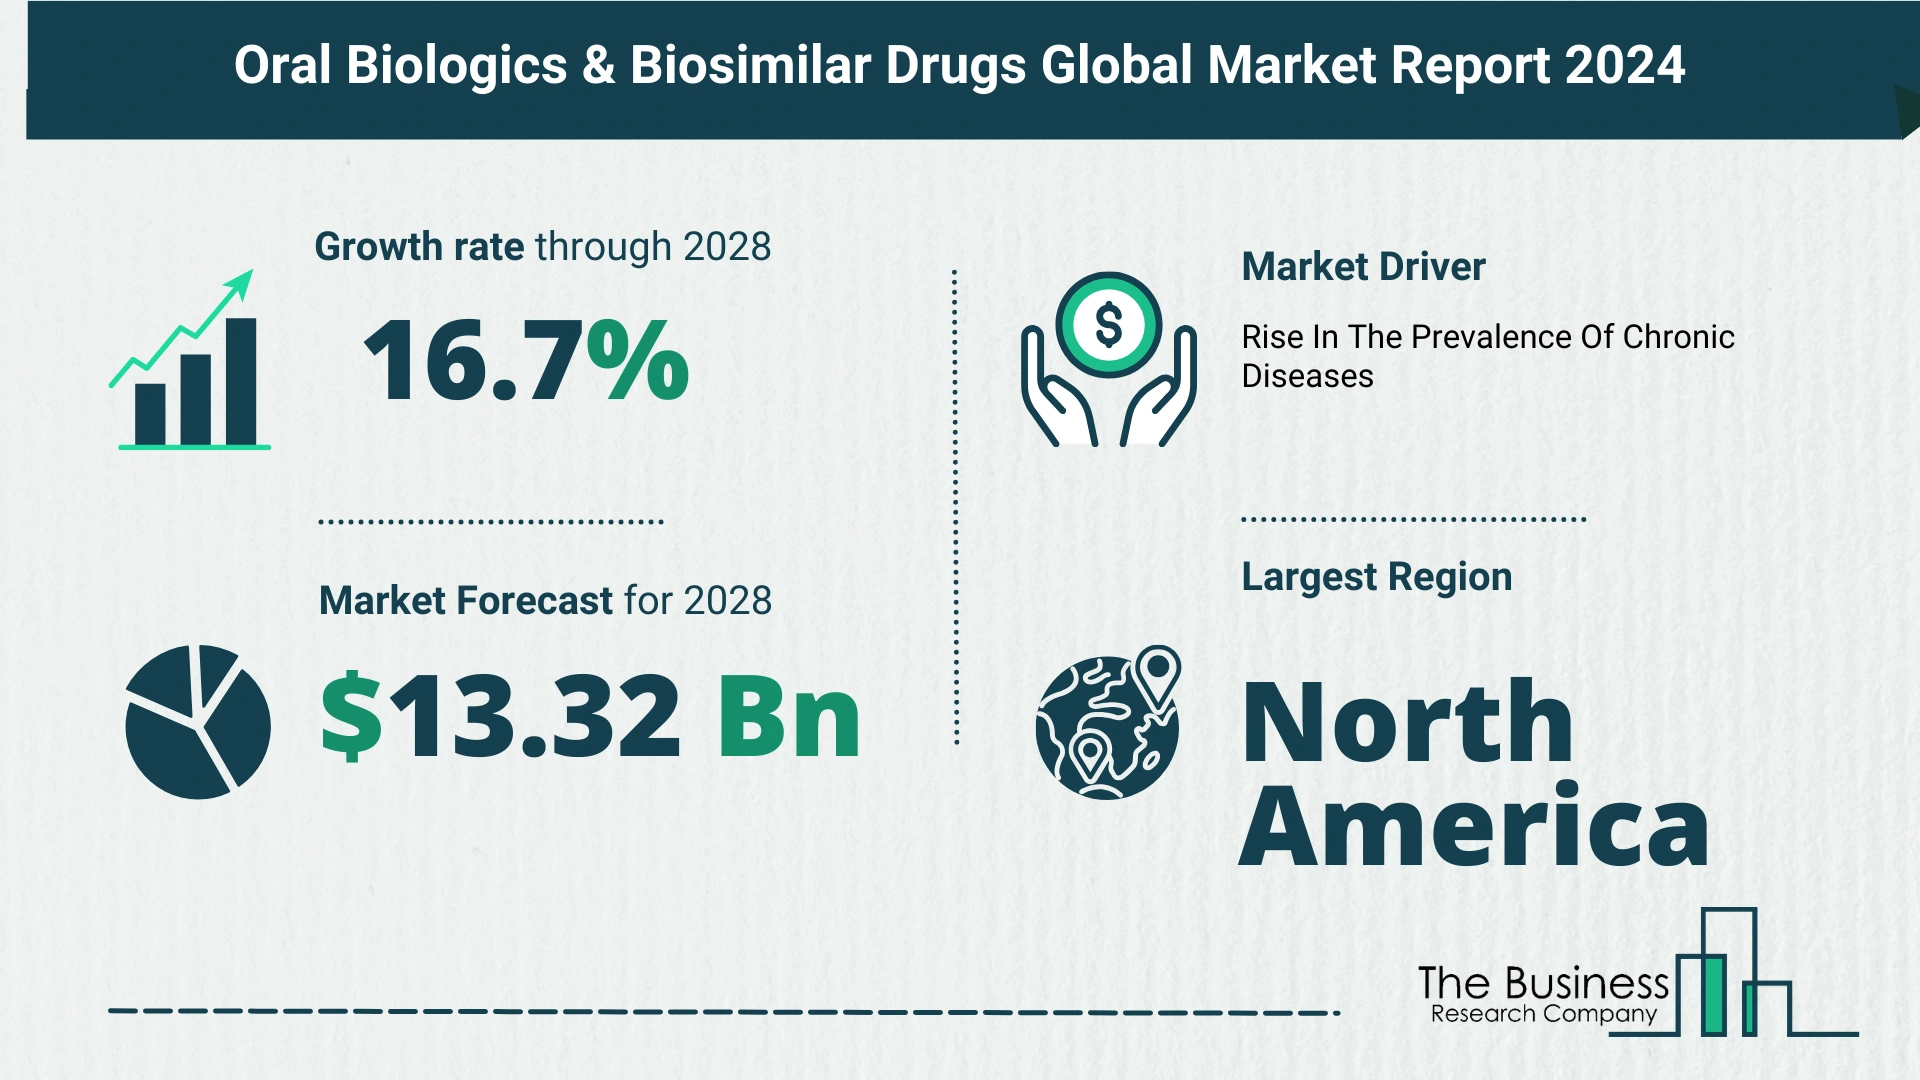 Global Oral Biologics & Biosimilar Drugs Market Size